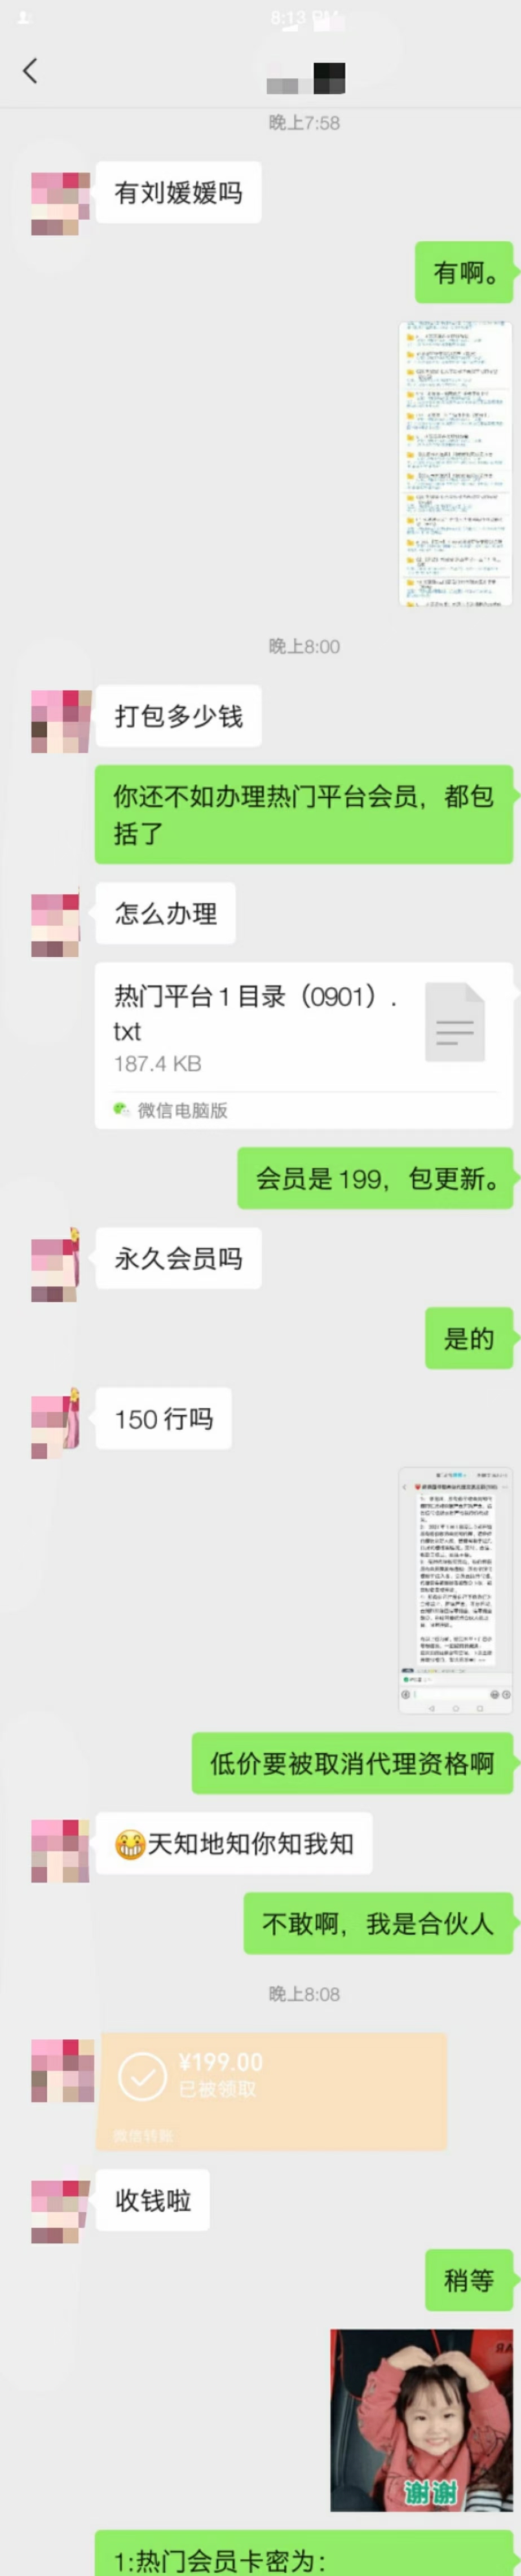 【新增】【热门平台会员+1】 这个客户需要刘媛媛的整套课程